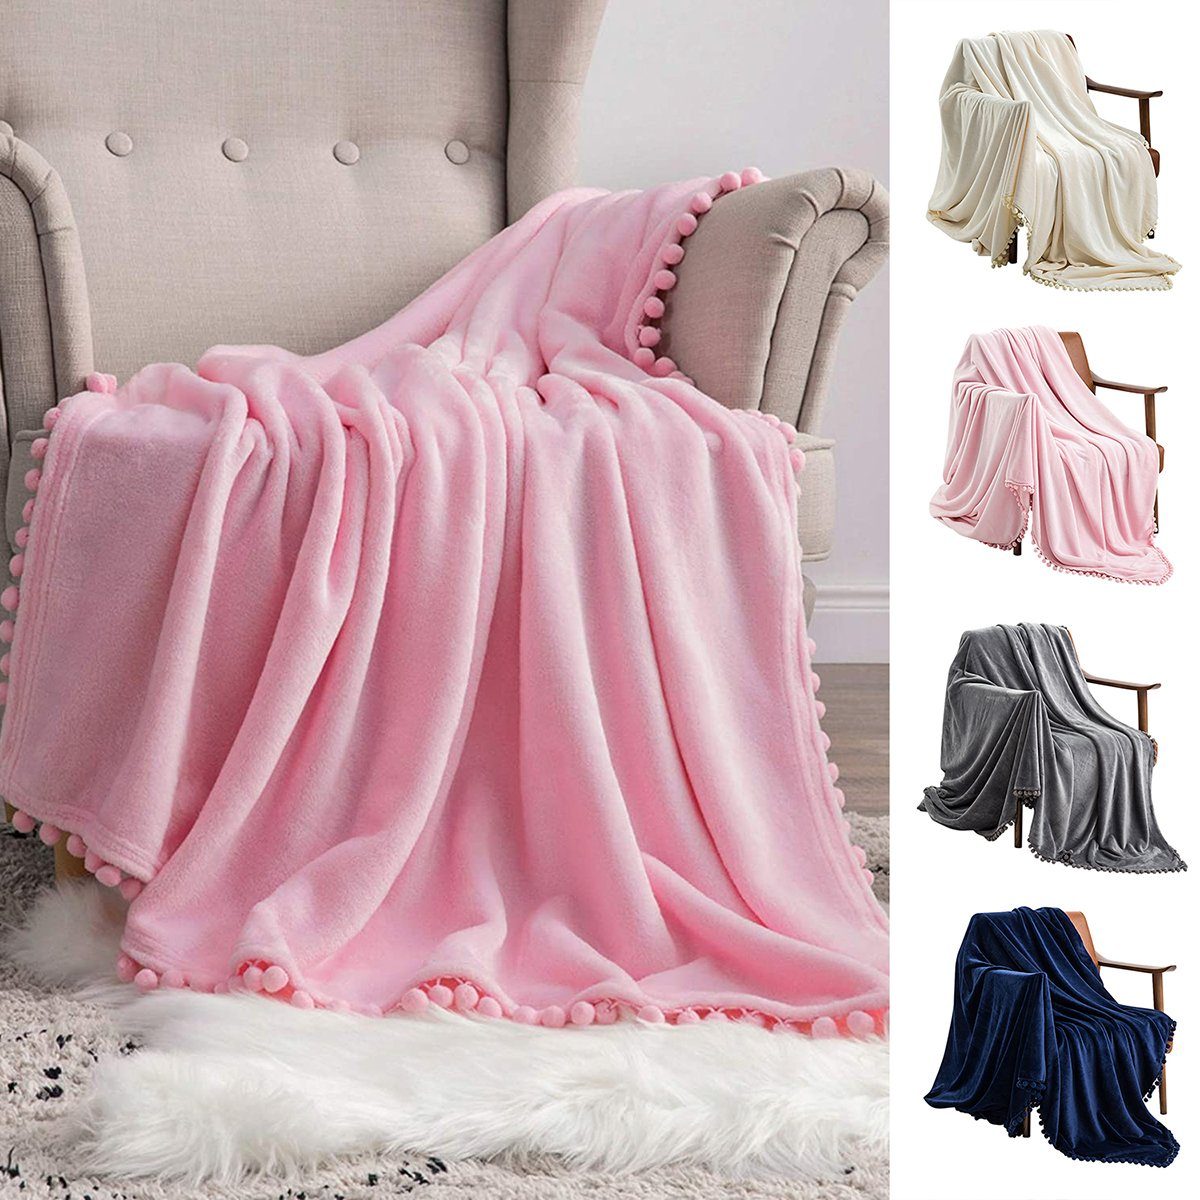 BTTO, Wohndecke warm Sofa Couch Flanell Pompoms Rose und Decken für Wohndecke Decke Kuscheldecke, Fleecedecke weich flauschig,